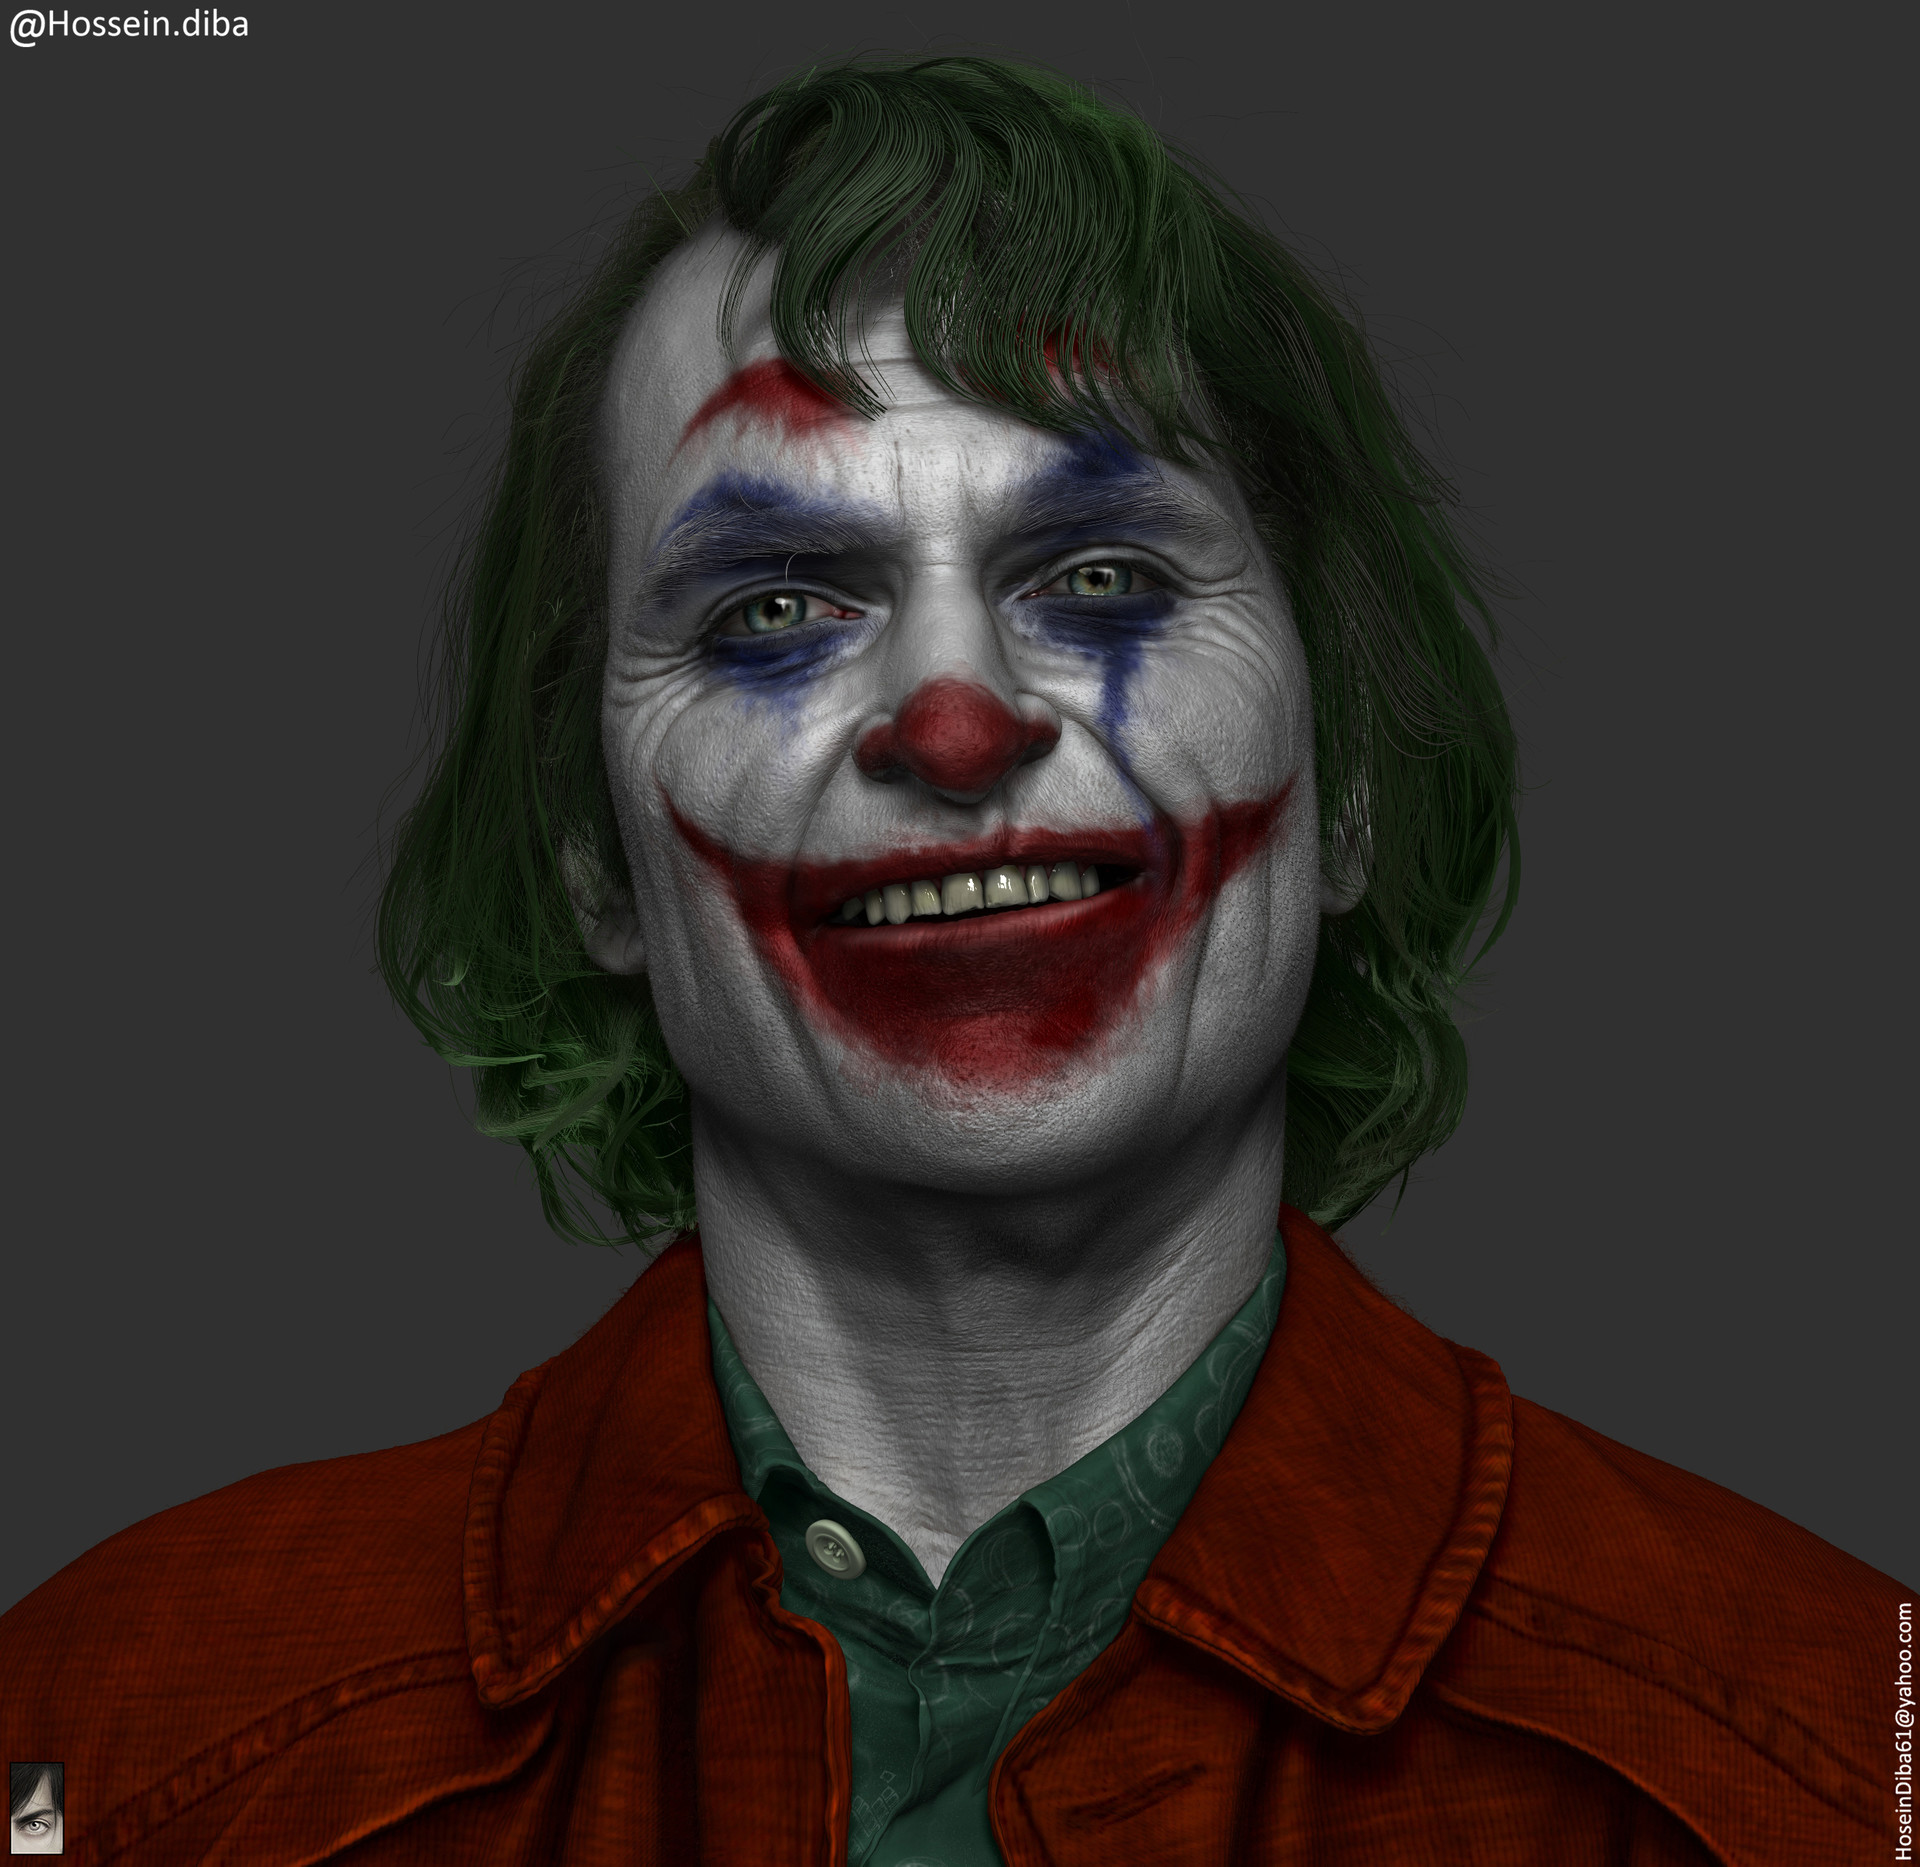 Ảnh Joker cười buồn tuyệt đẹp